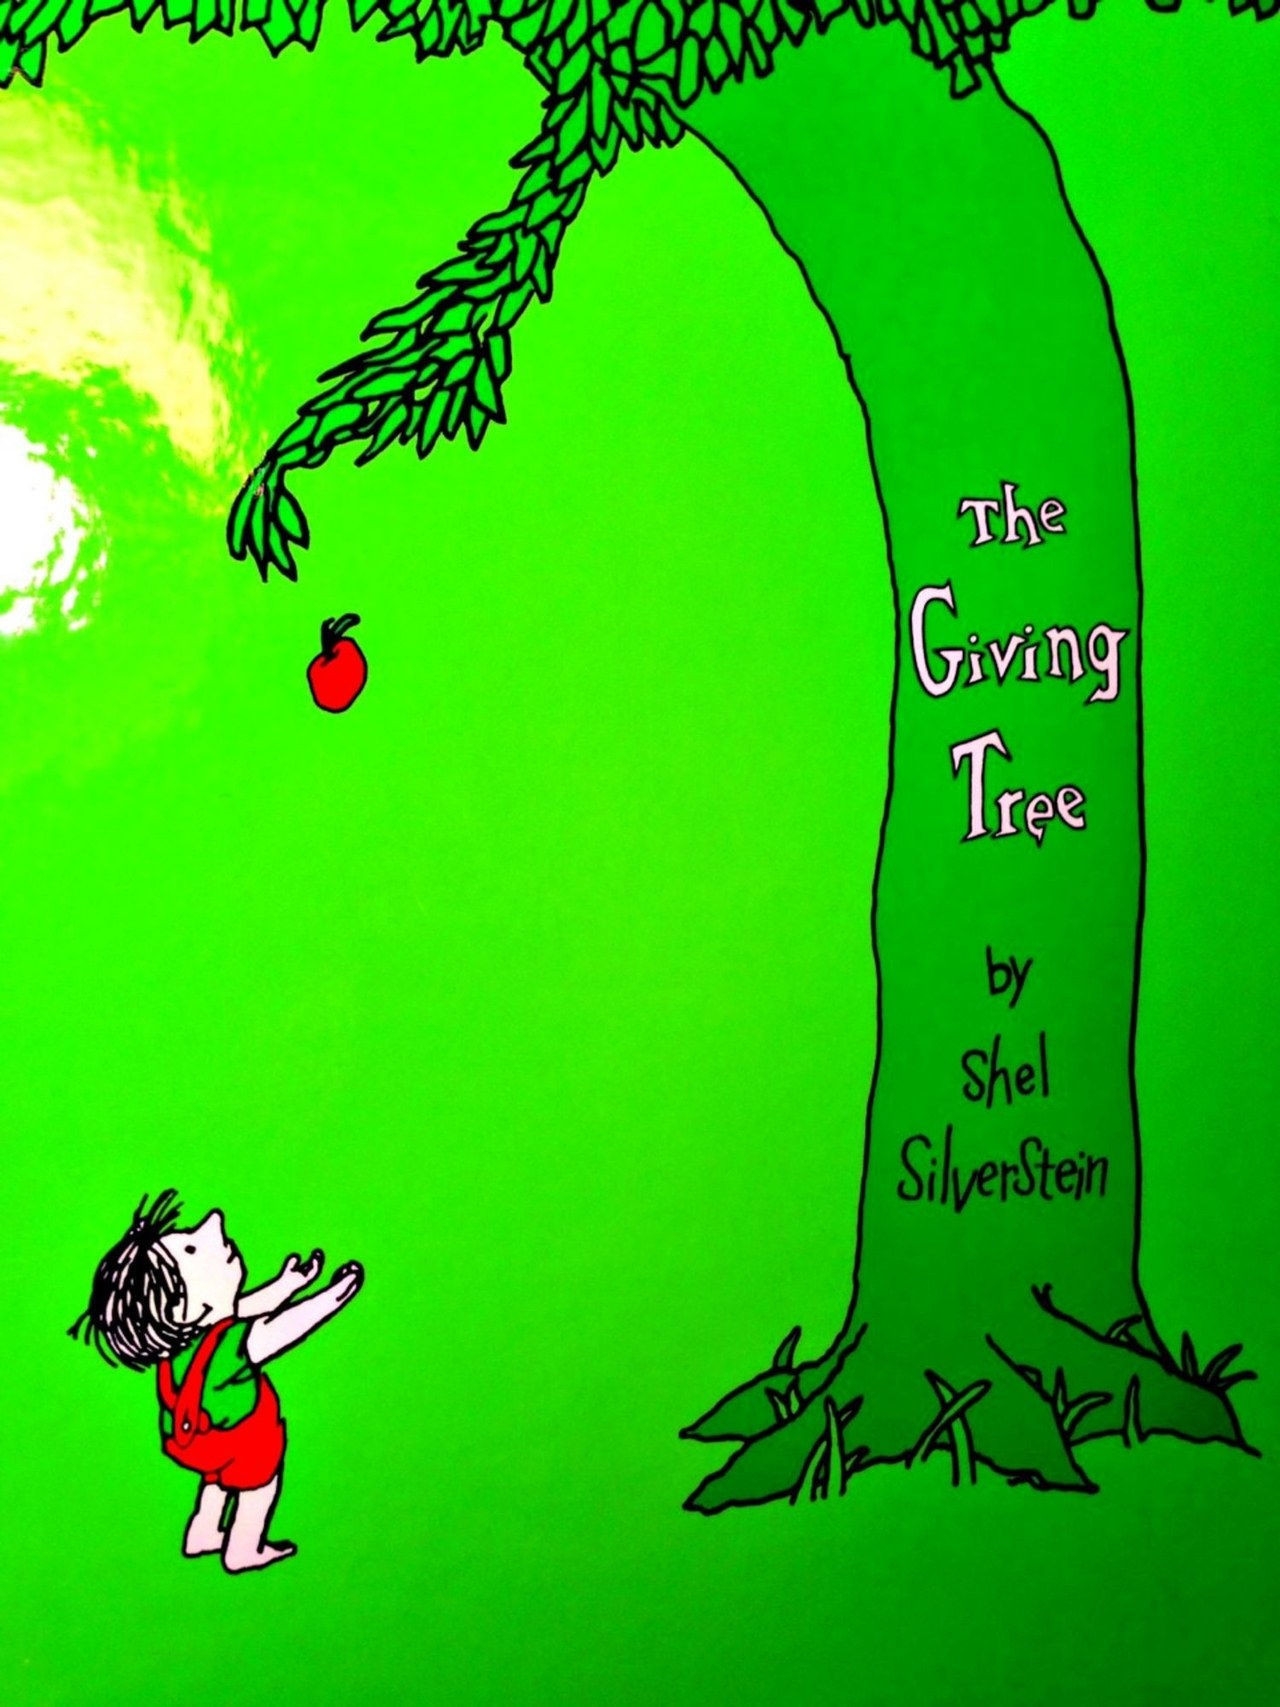 该 giving tree book